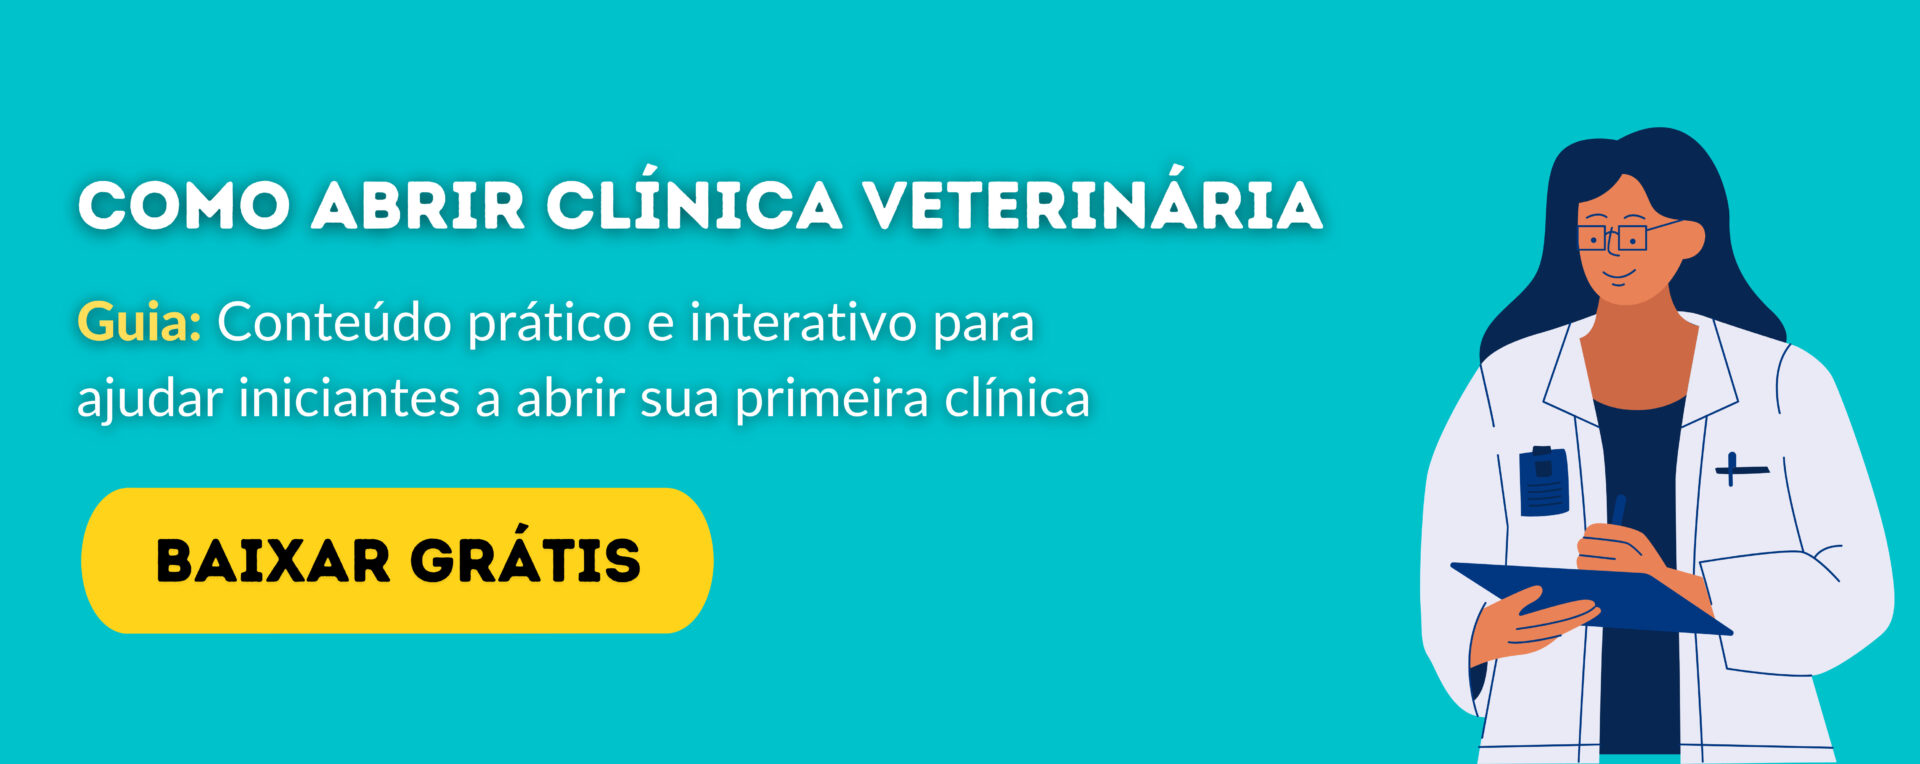 guia_abrir_clinica_2.0